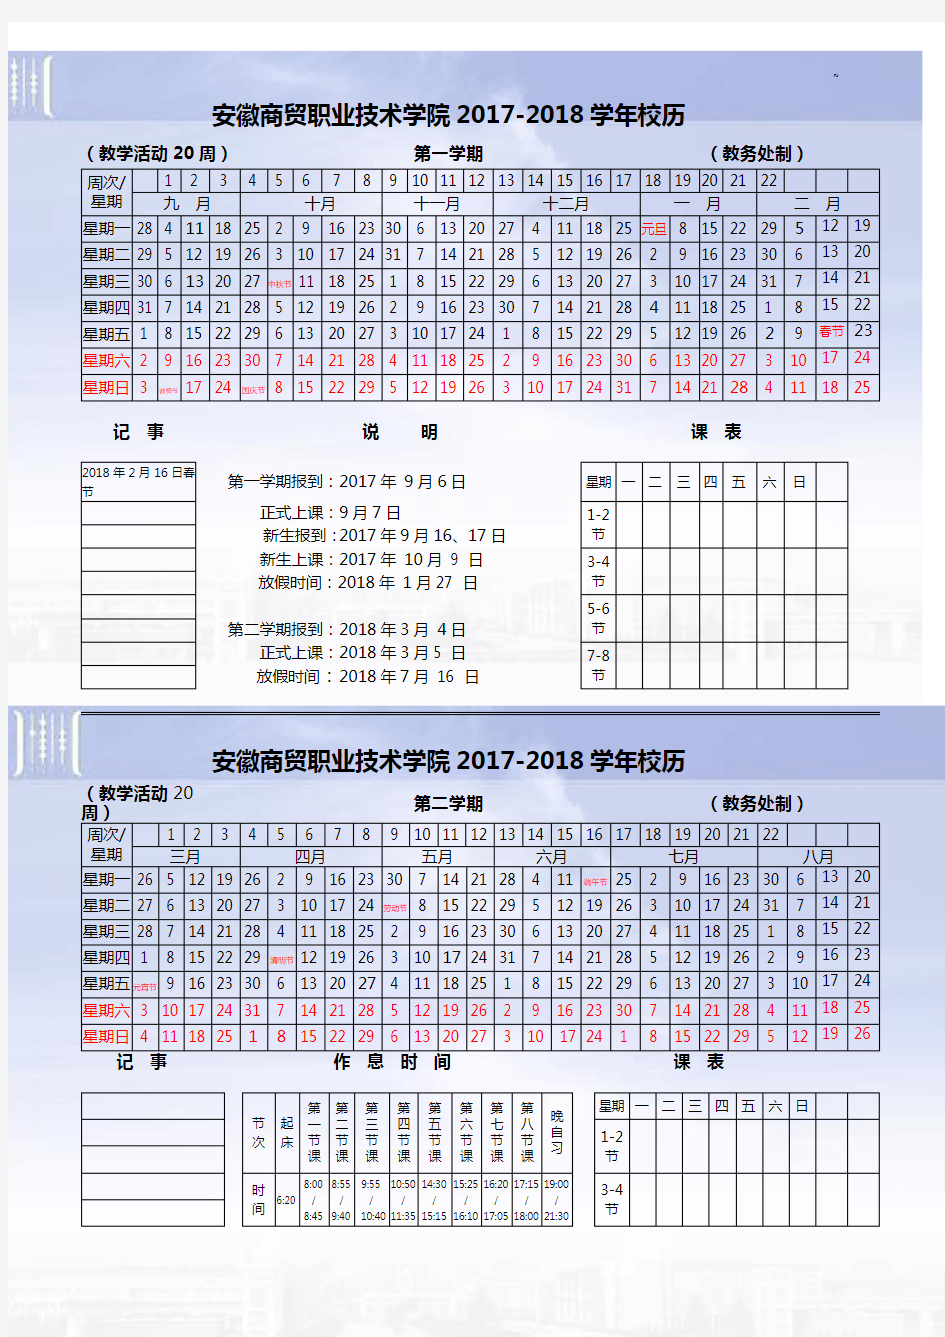 安徽商贸职业技术学院2016-2017年度学年校历